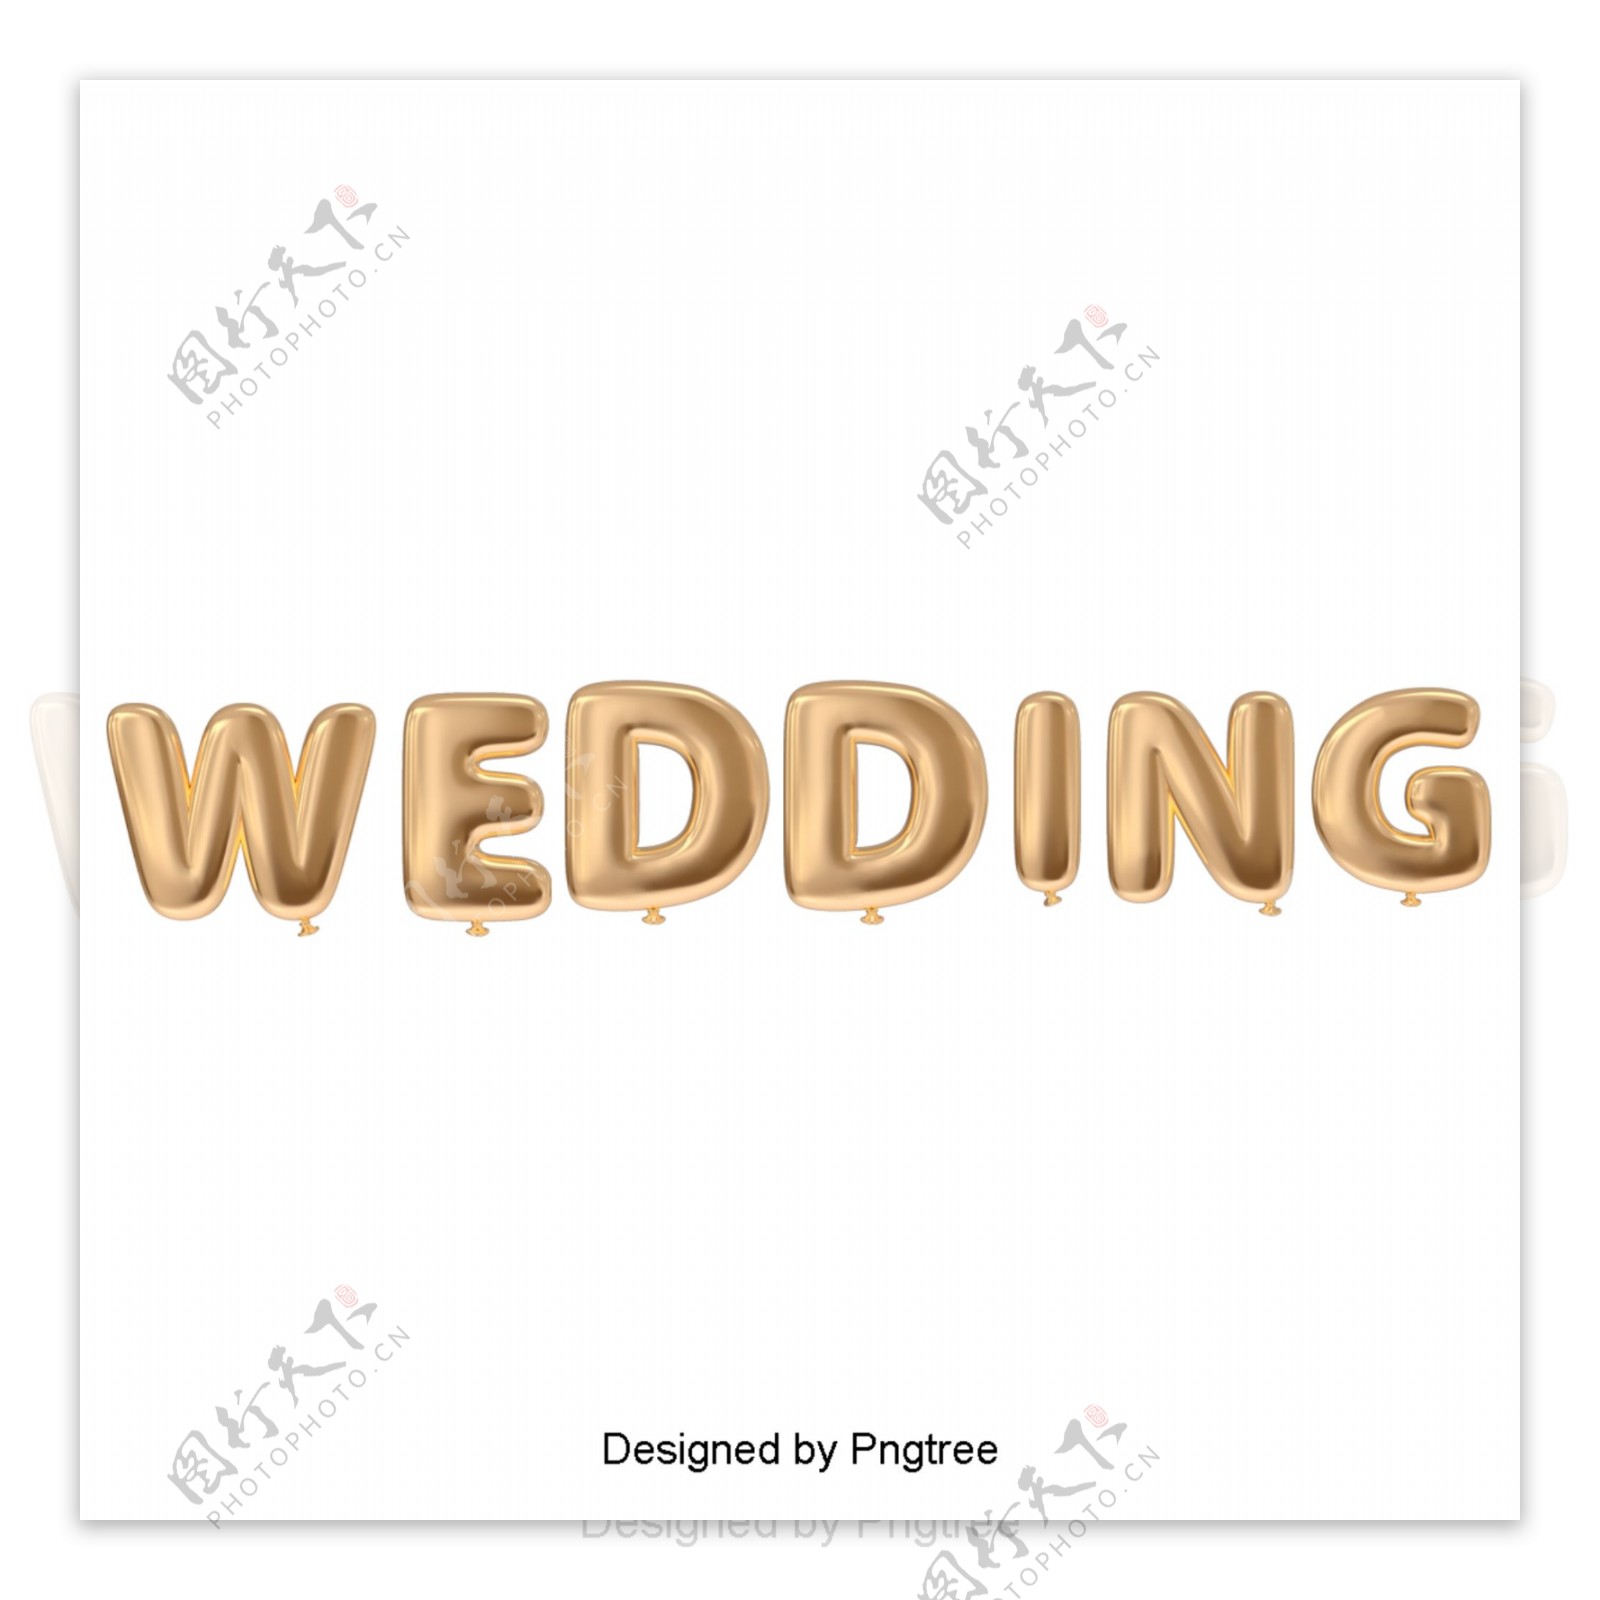 金色气球婚礼字体设计